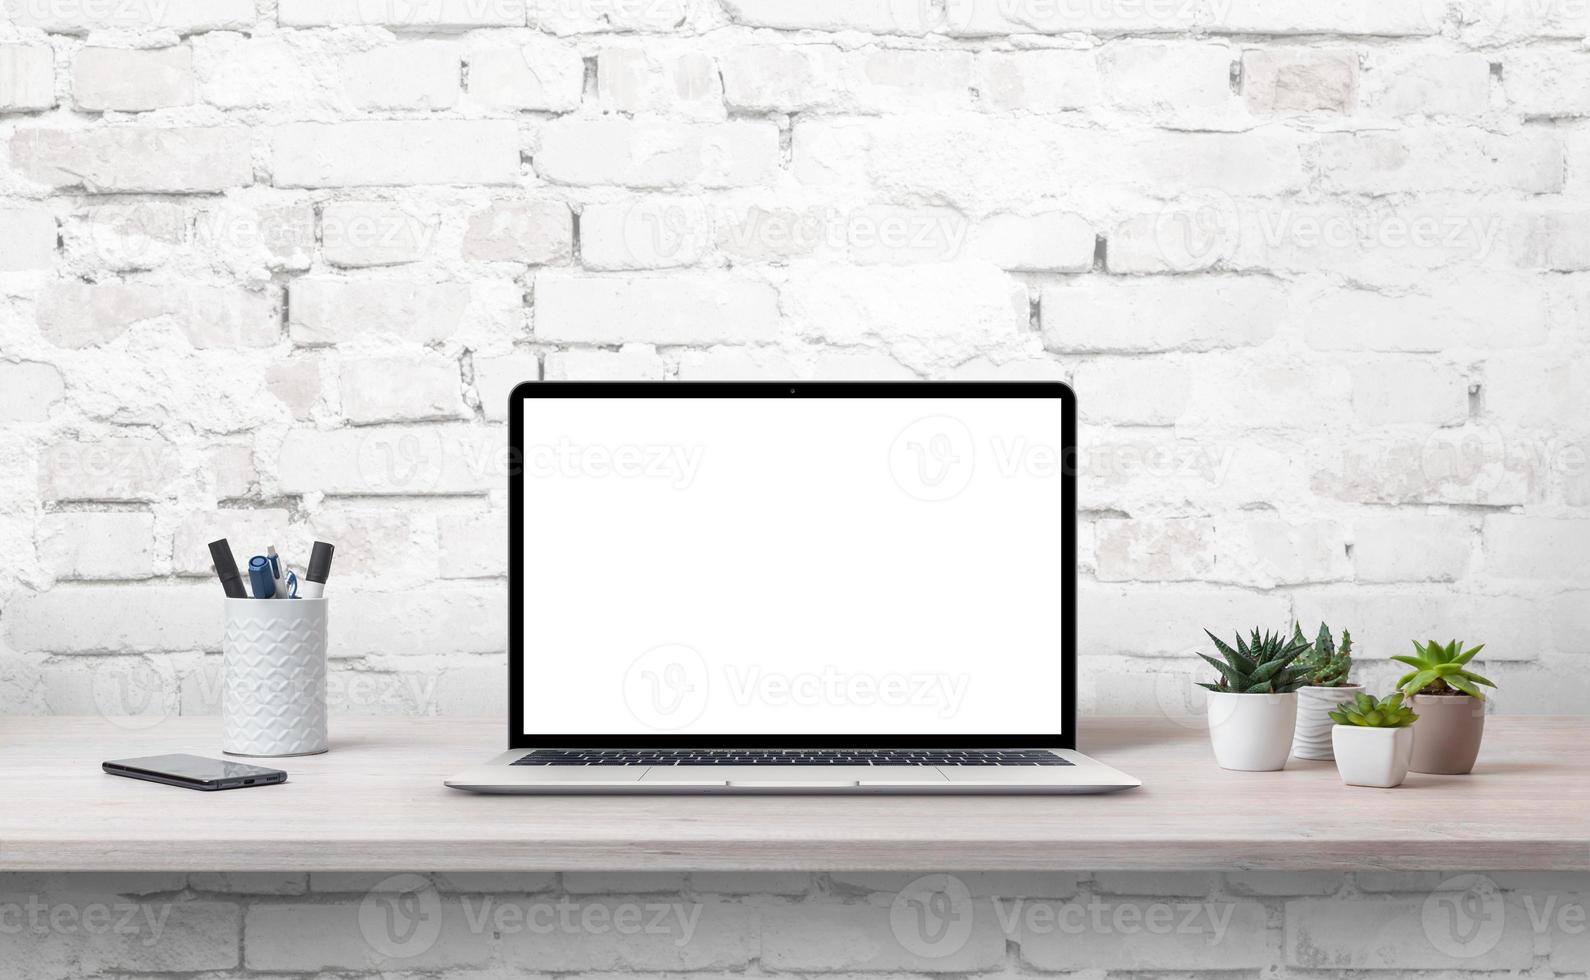 ordinateur portable sur le bureau avec écran isoalté pour maquette. plantes, téléphone et stylos à côté. mur de briques blanches en arrière-plan photo